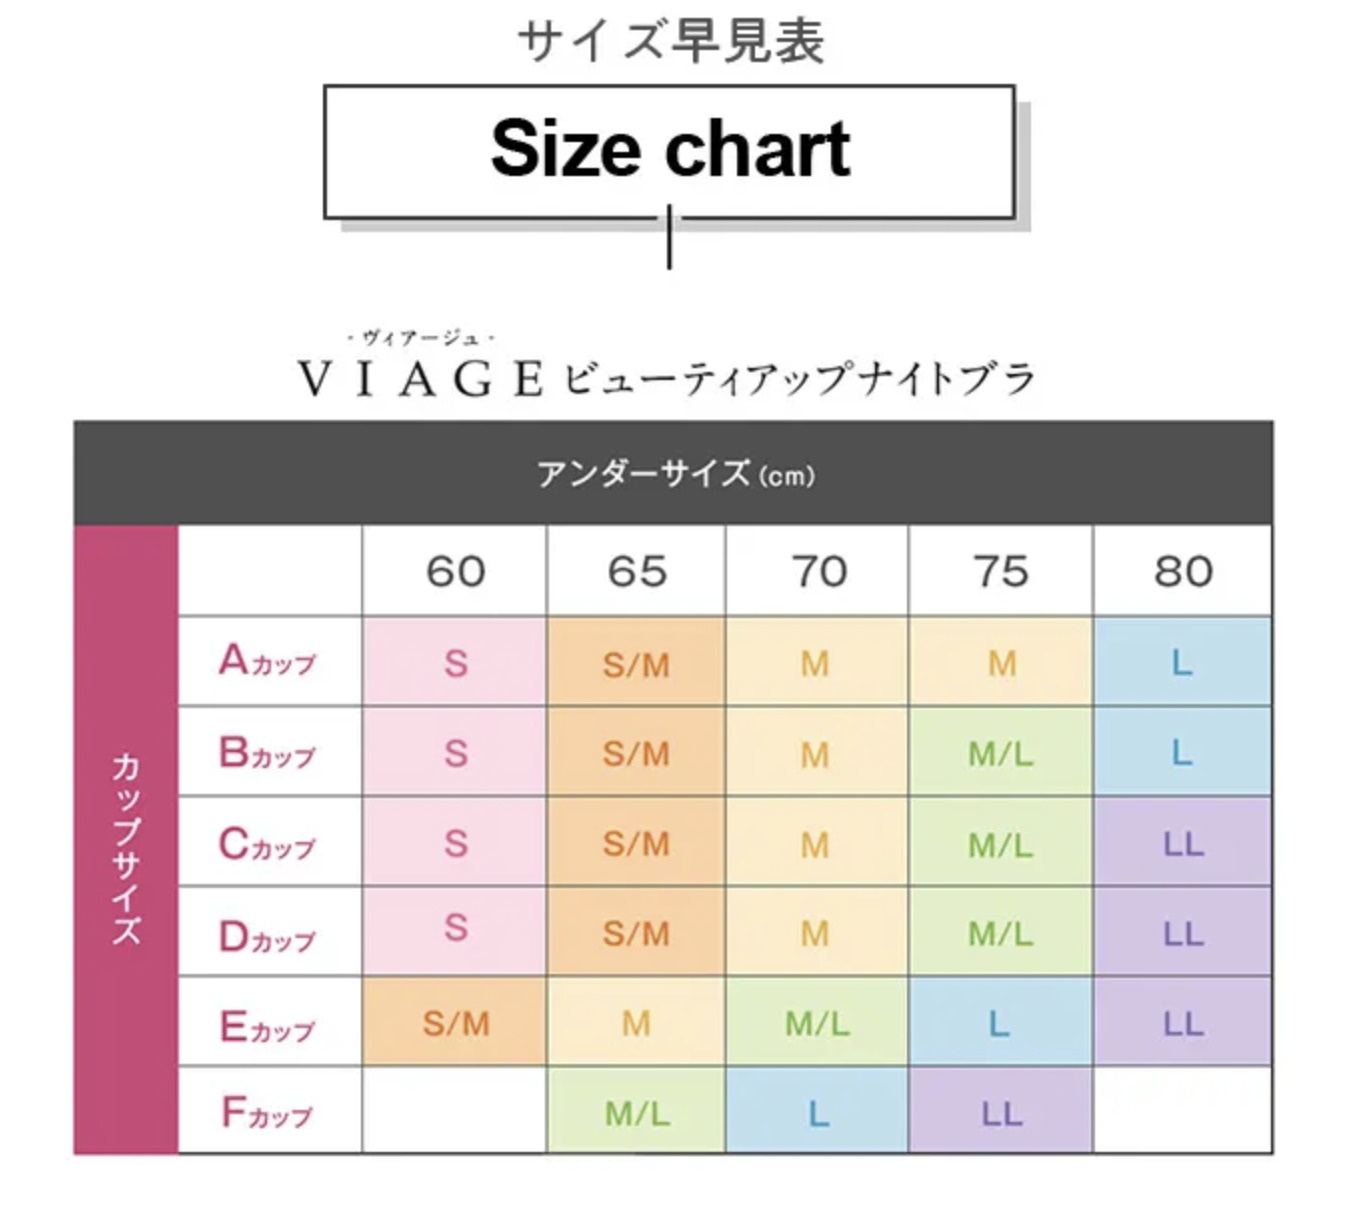 viageのサイズ表